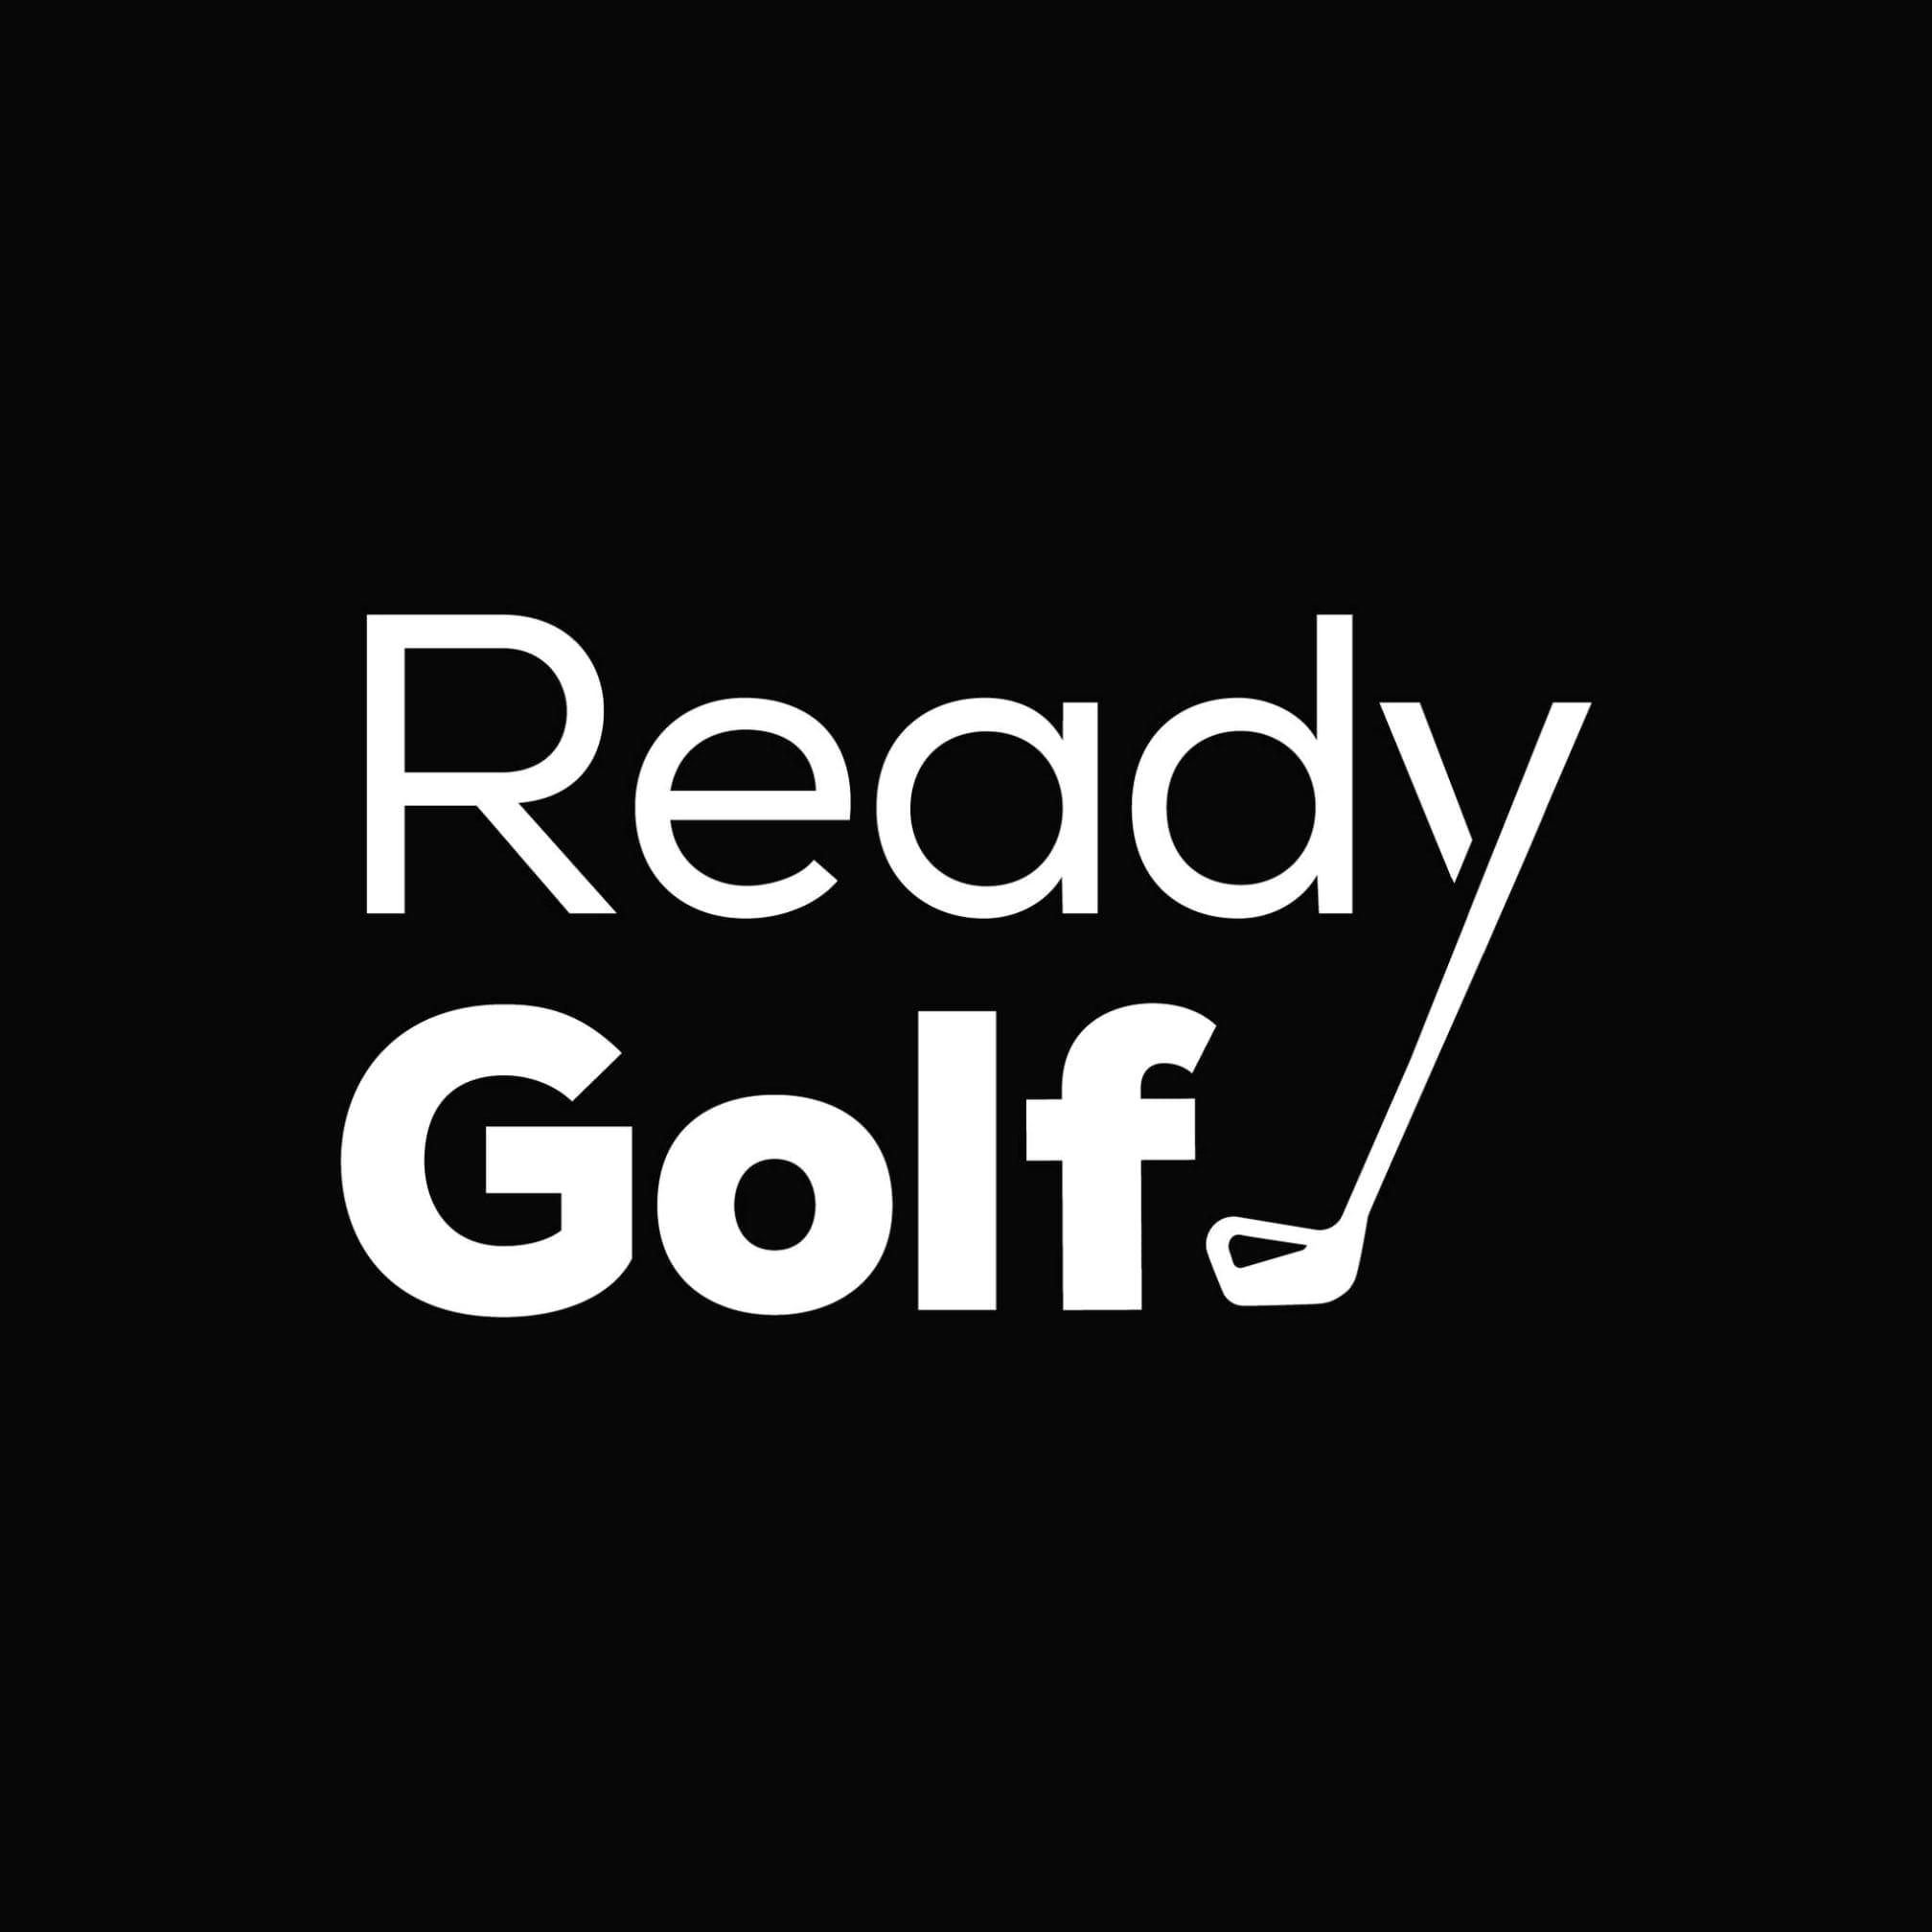 Ready Golf Logo